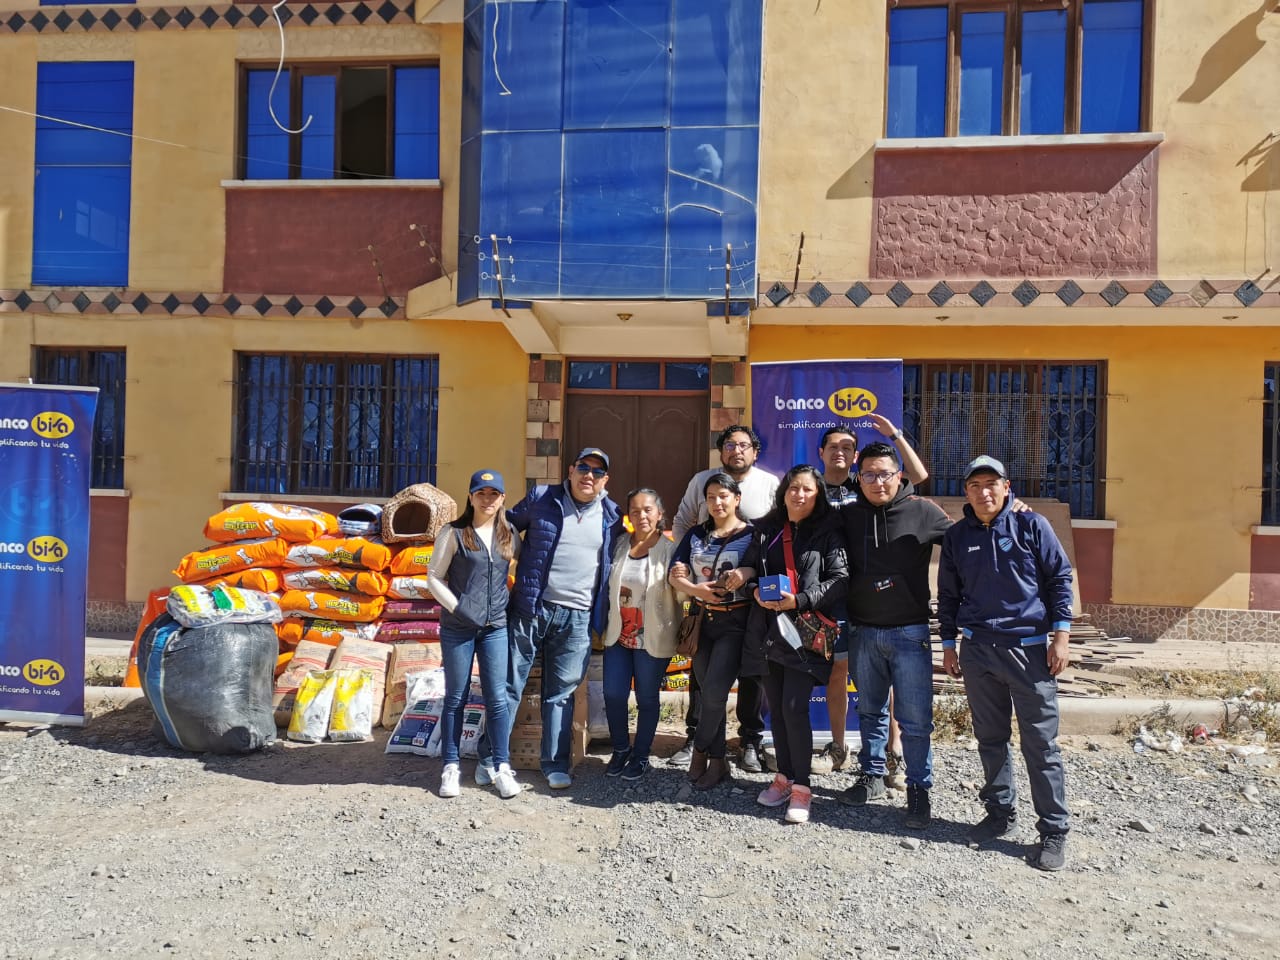 La campaña de Banco Bisa “Por los Peluditos de la Calle” llega a Potosí